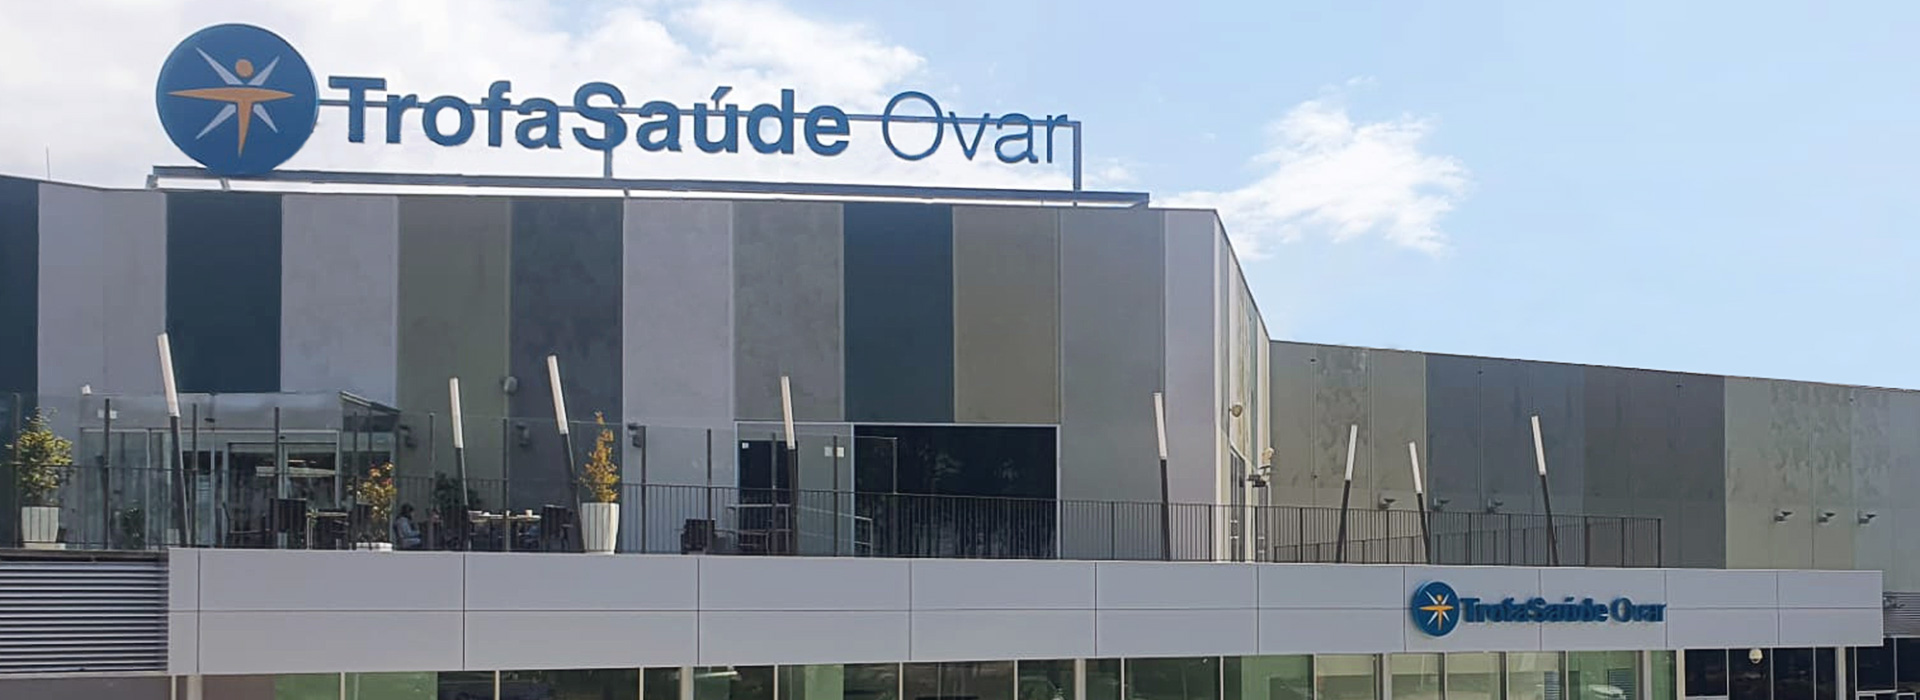 Trofa Saúde Ovar: já abriu no centro comercial Vida Ovar